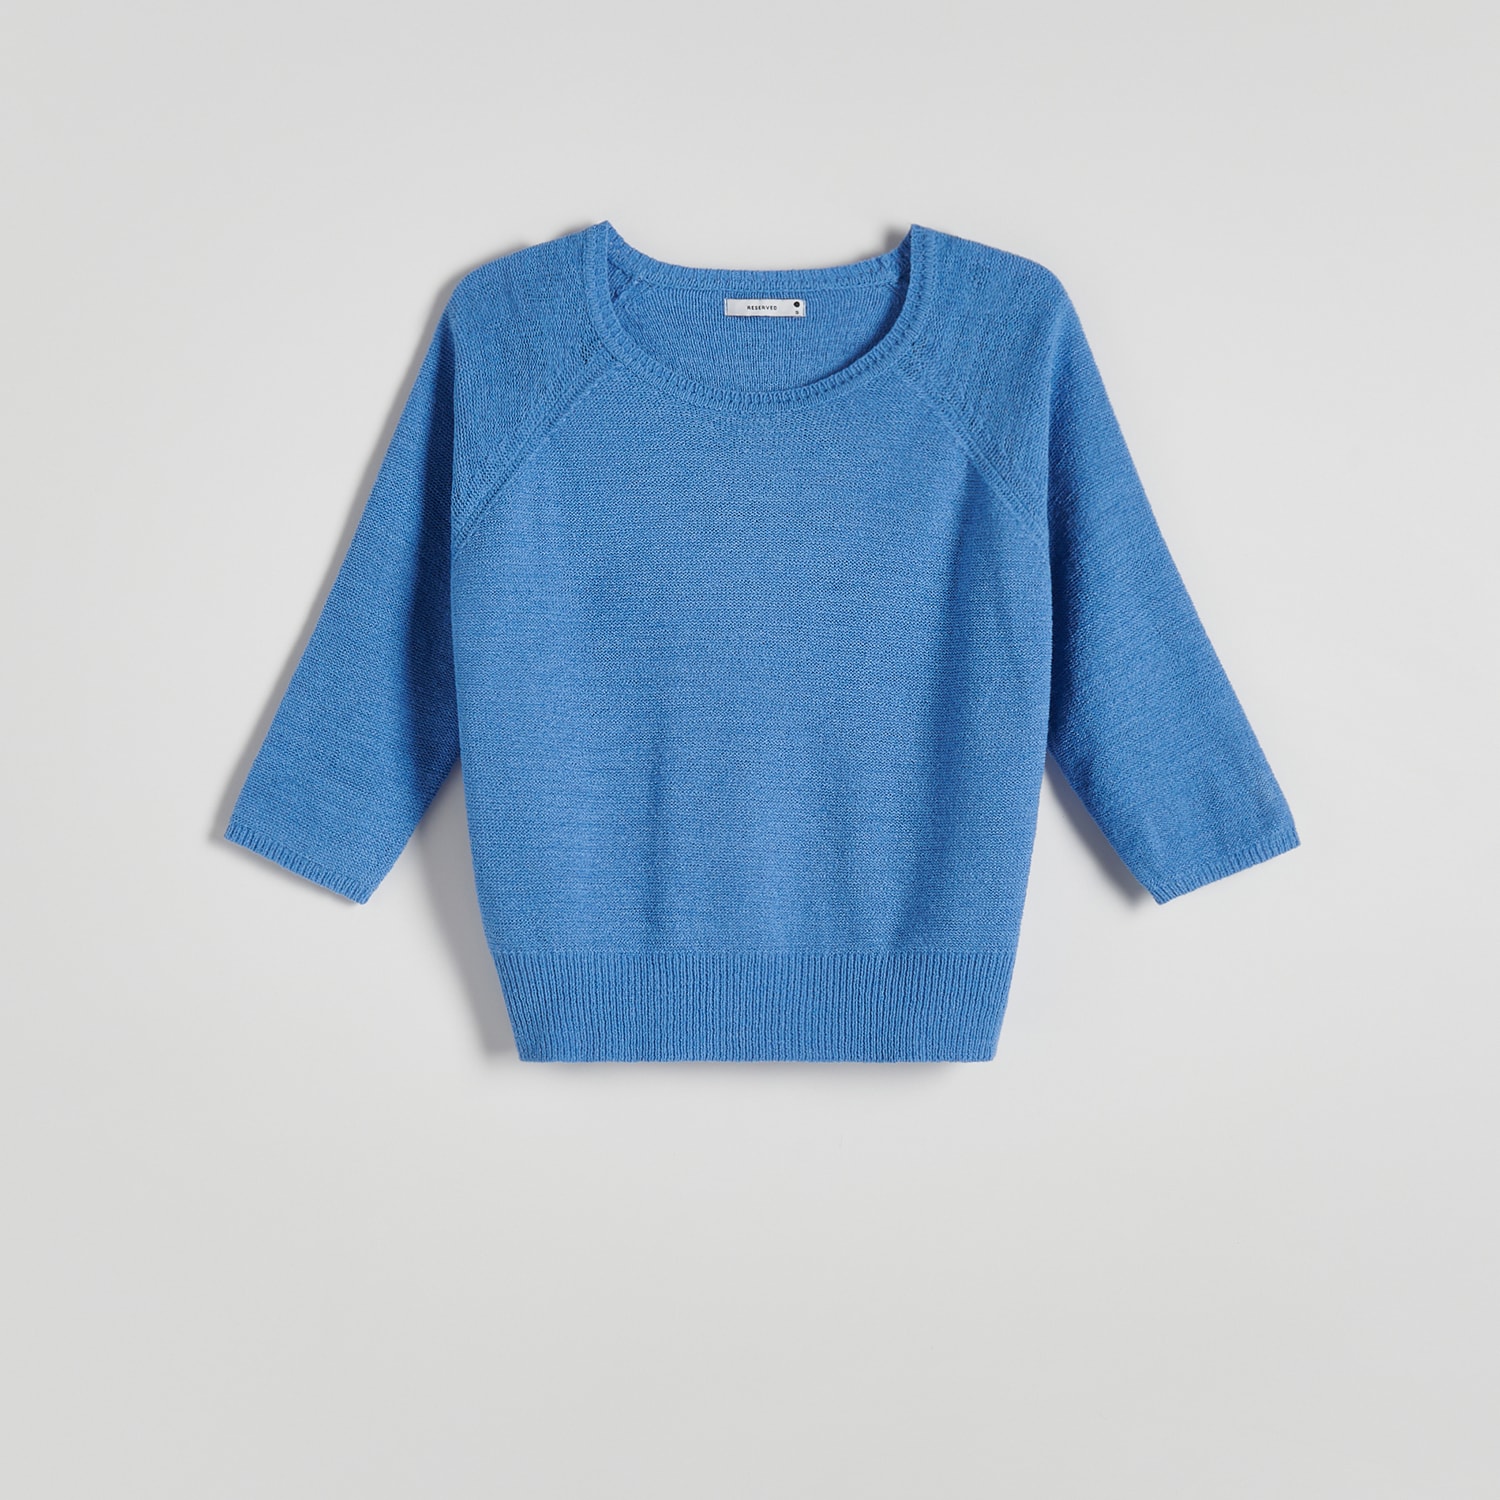 Reserved - Gładki sweter - Niebieski